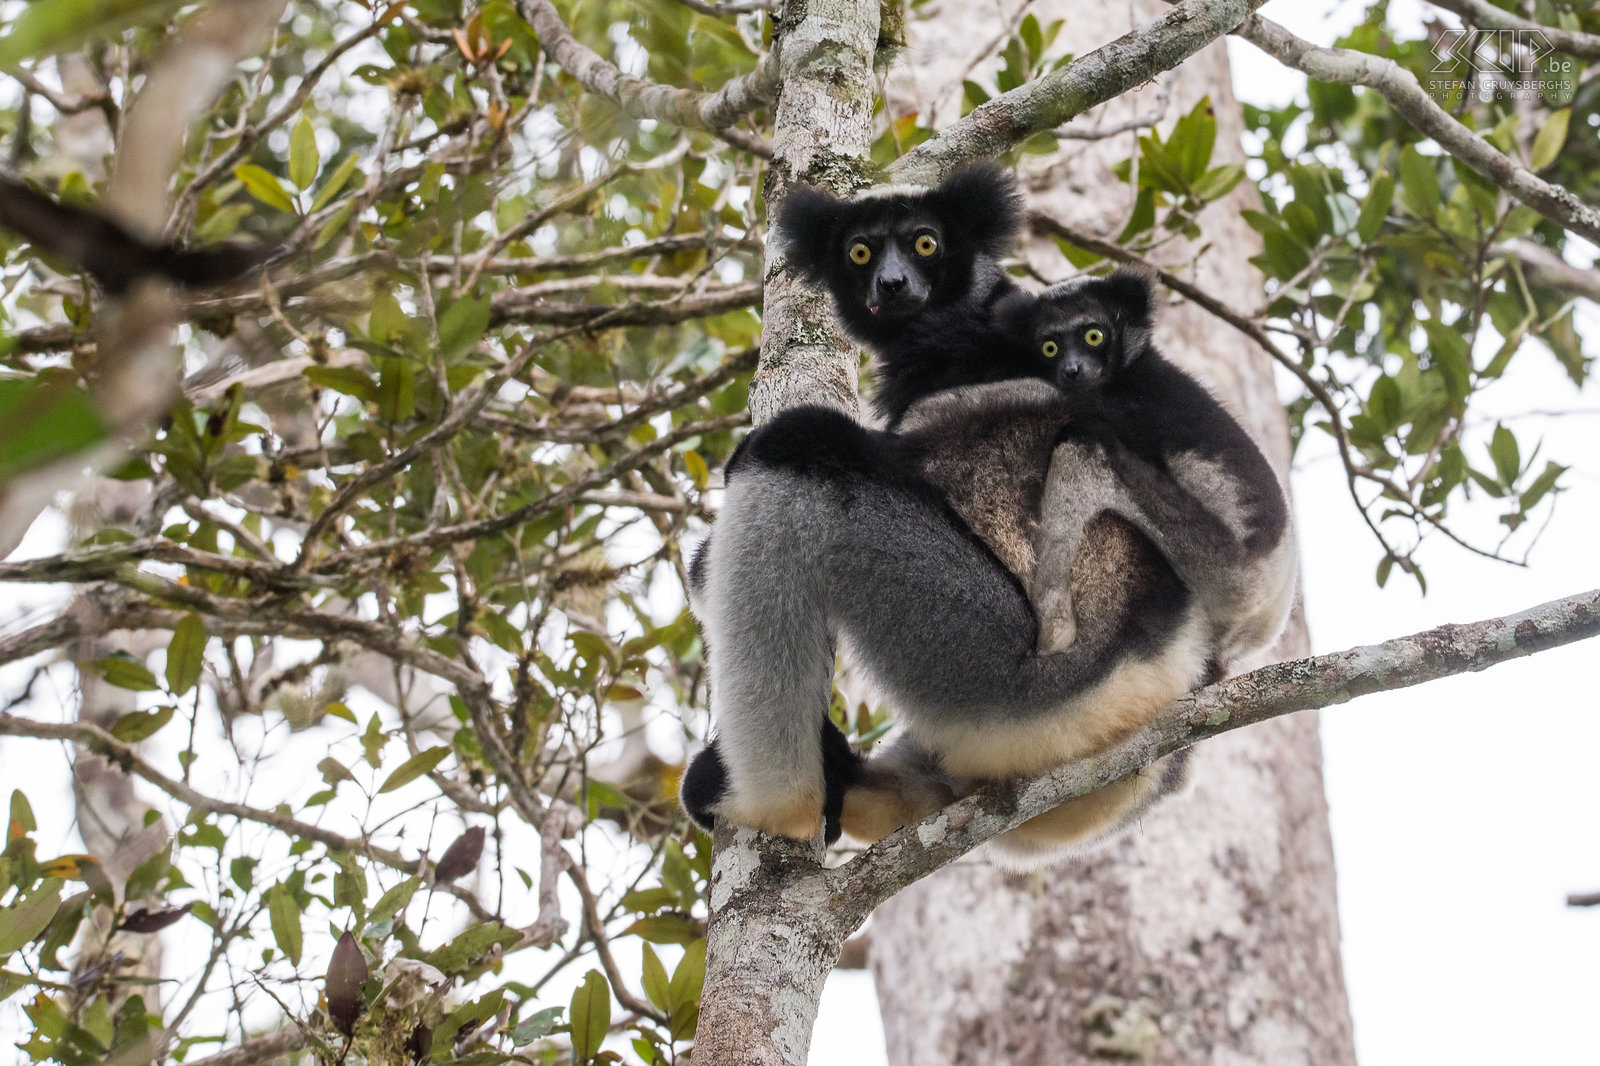 Andasibe - Indri met baby De indri (Indri indri) is de grootste levende makisoort en ze leven in het laagland en montane bossen van een klein deel van de oostkust van Madagaskar. Het is een heel bijzondere dier maar het kan gemakkelijk gezien worden in de regenwouden van Andasibe en Mantadia. Ze worden tot bijna 120cm lang en wegen tussen de 6 en 9,5kg. De indri is bekend om zijn oorverdovende en kenmerkende gezangen. Als je het een keer gehoord hebt, zal je het niet snel vergeten. Stefan Cruysberghs